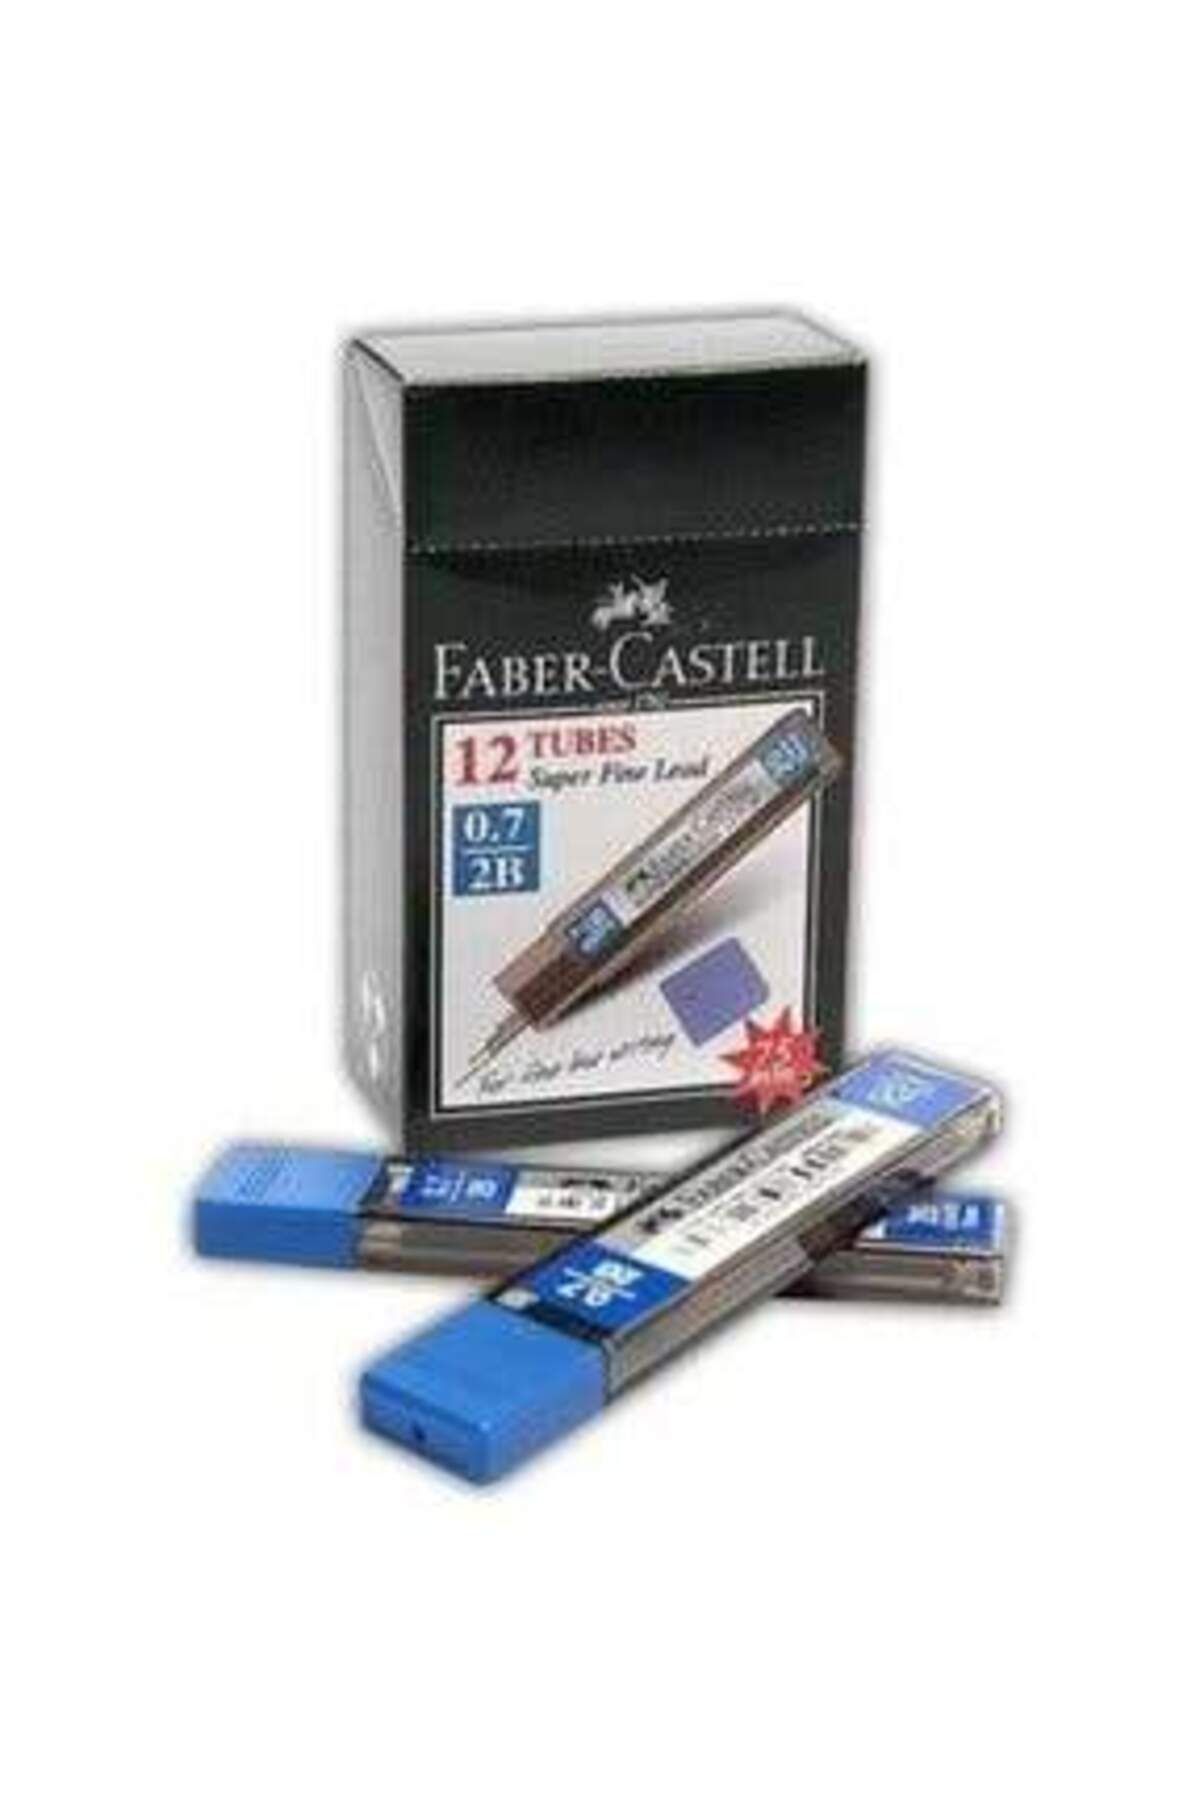 Faber Castell Süper Fine Min 2b 0.7 Mm 12 Tüplük Kutu (75 MM)